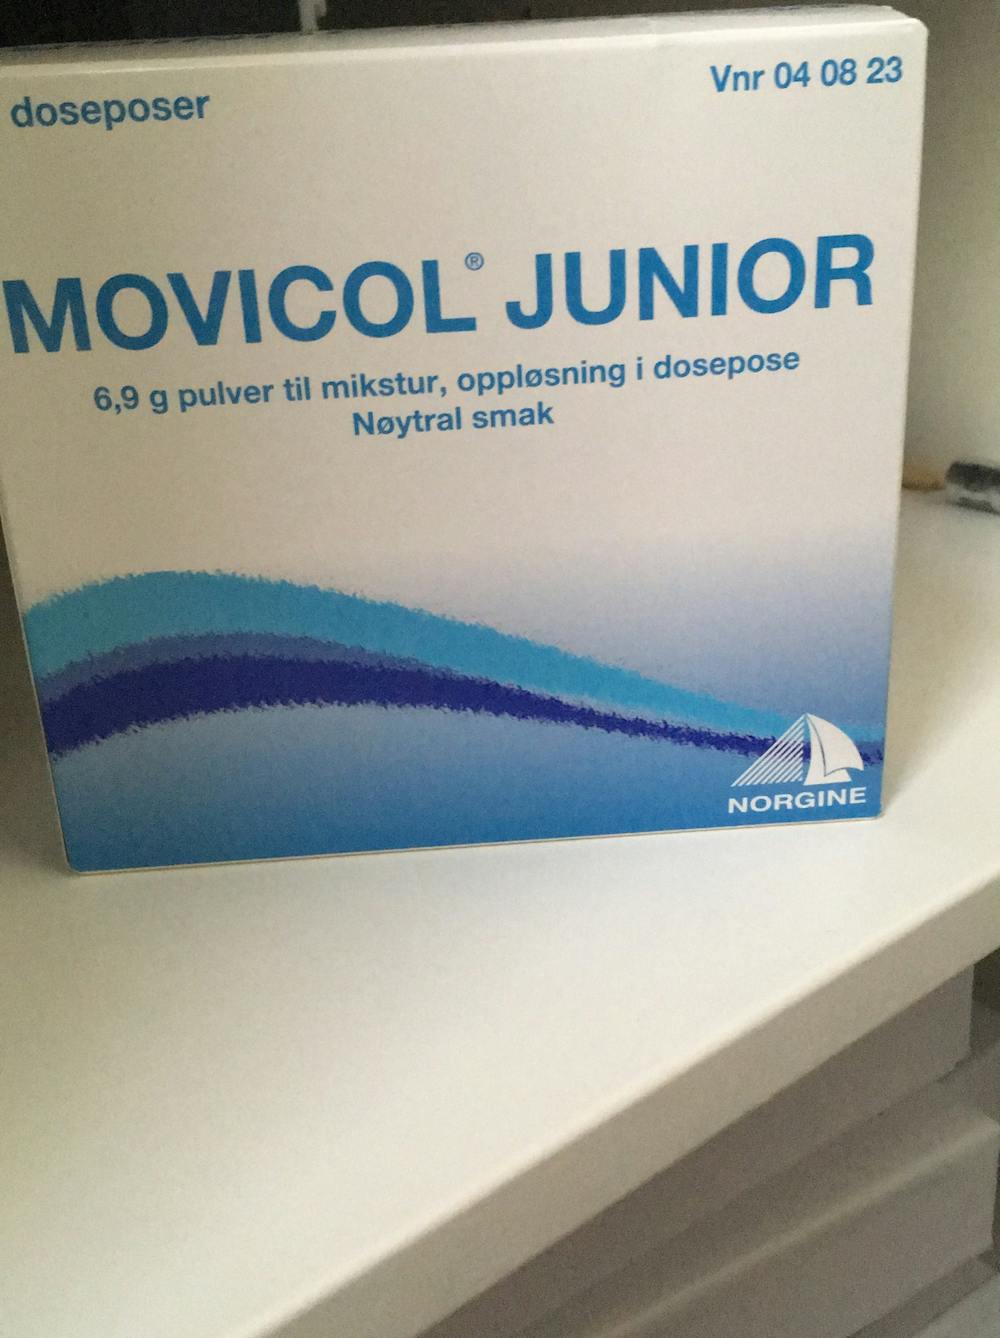 Movicol junior, Norgine